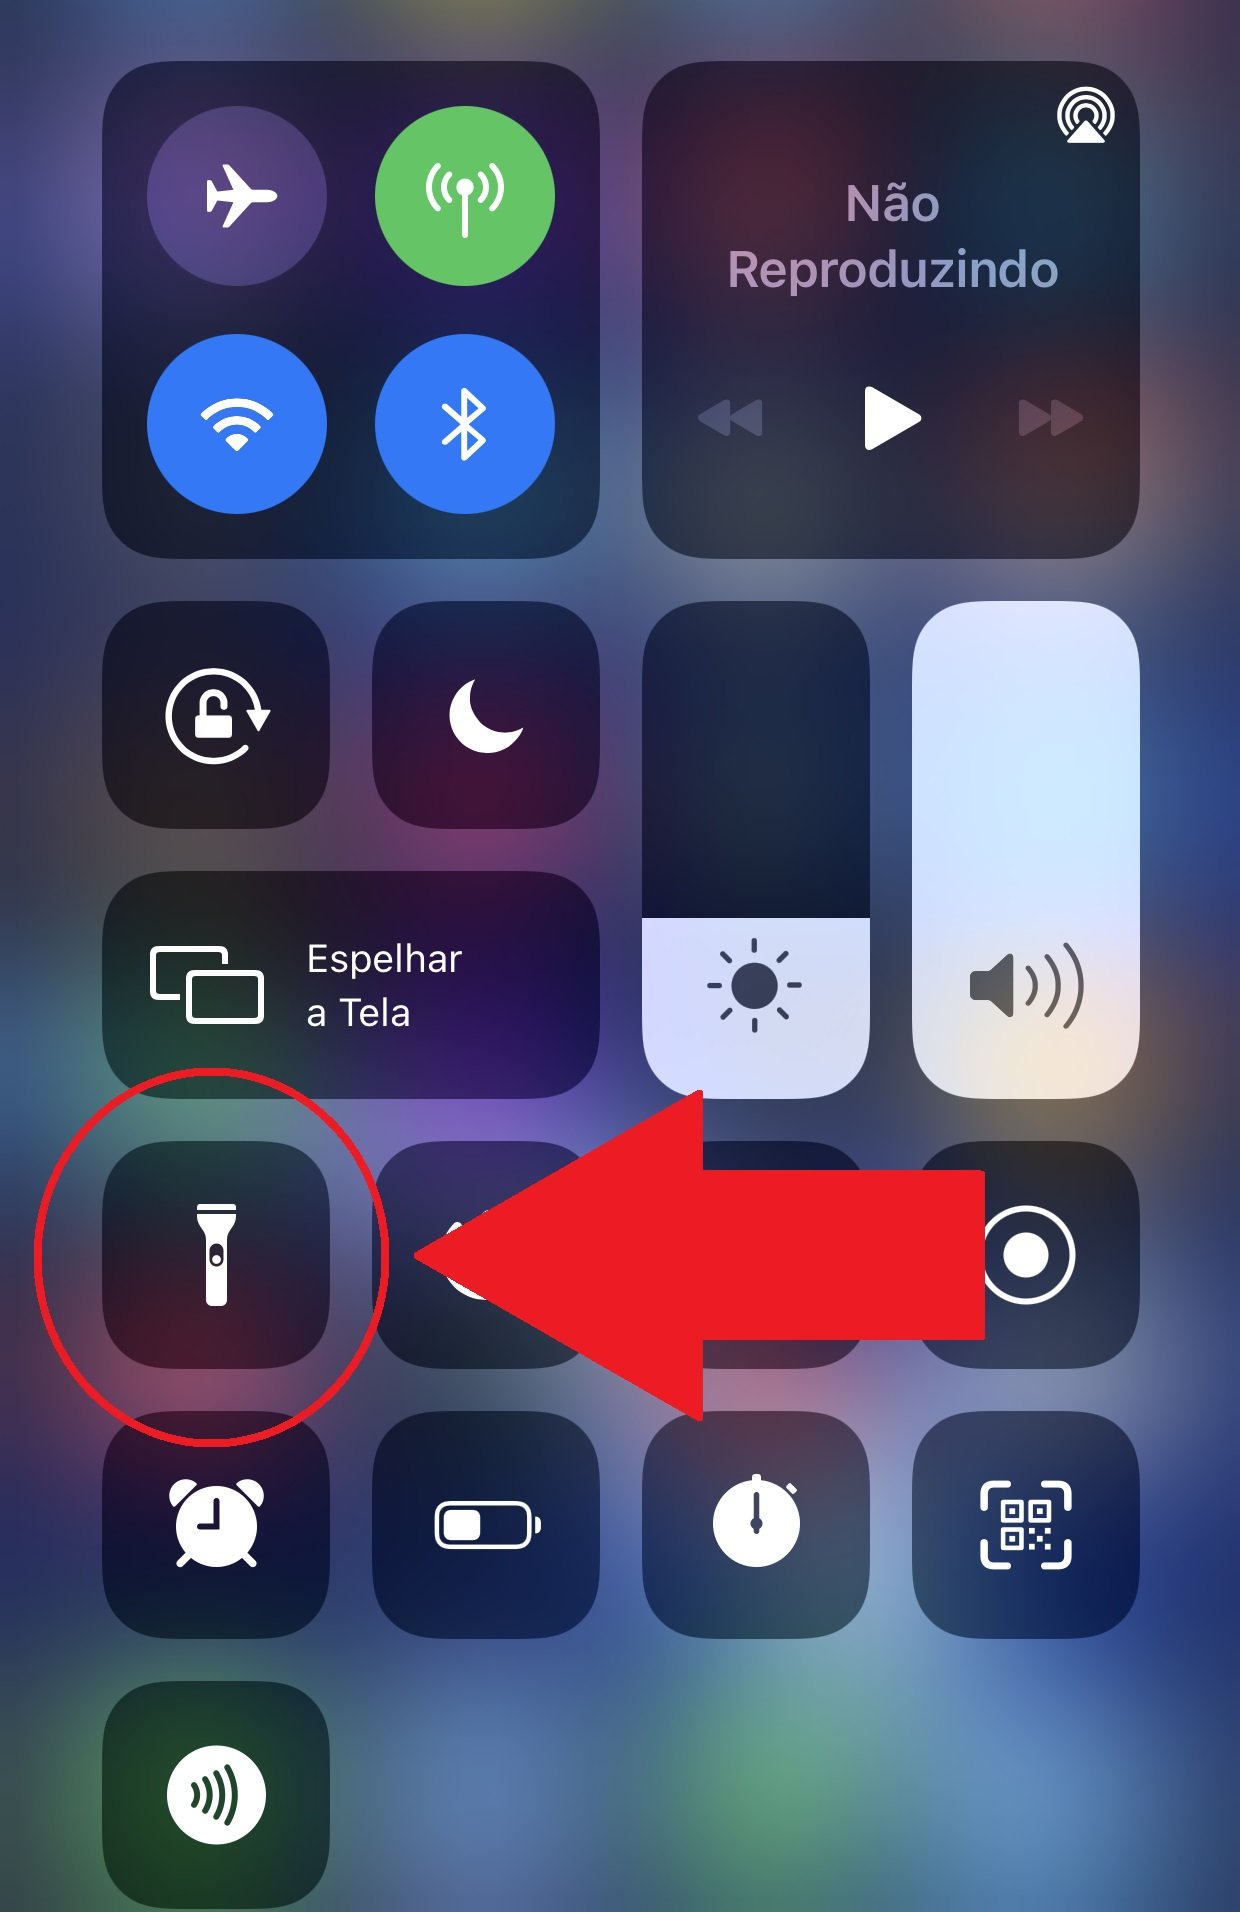 Na tela de botões de atalho do iPhone, aperte no símbolo da Lanterna